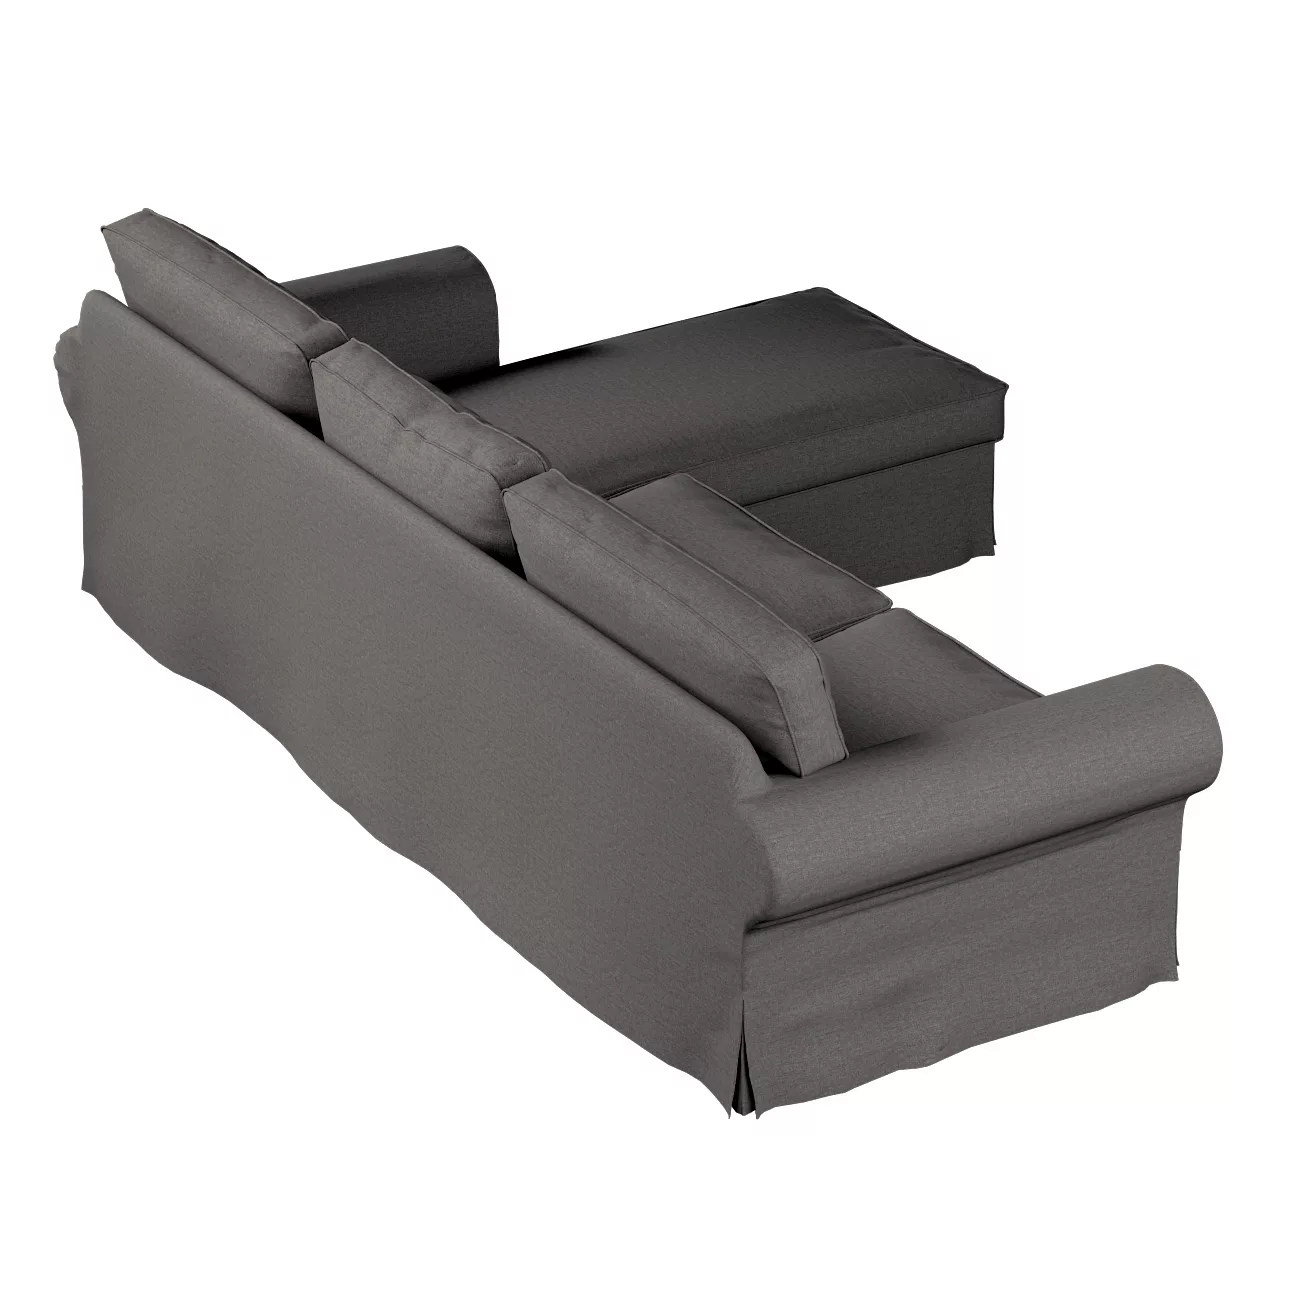 Bezug für Ektorp 2-Sitzer Sofa mit Recamiere, dunkelgrau, Ektorp 2-Sitzer S günstig online kaufen